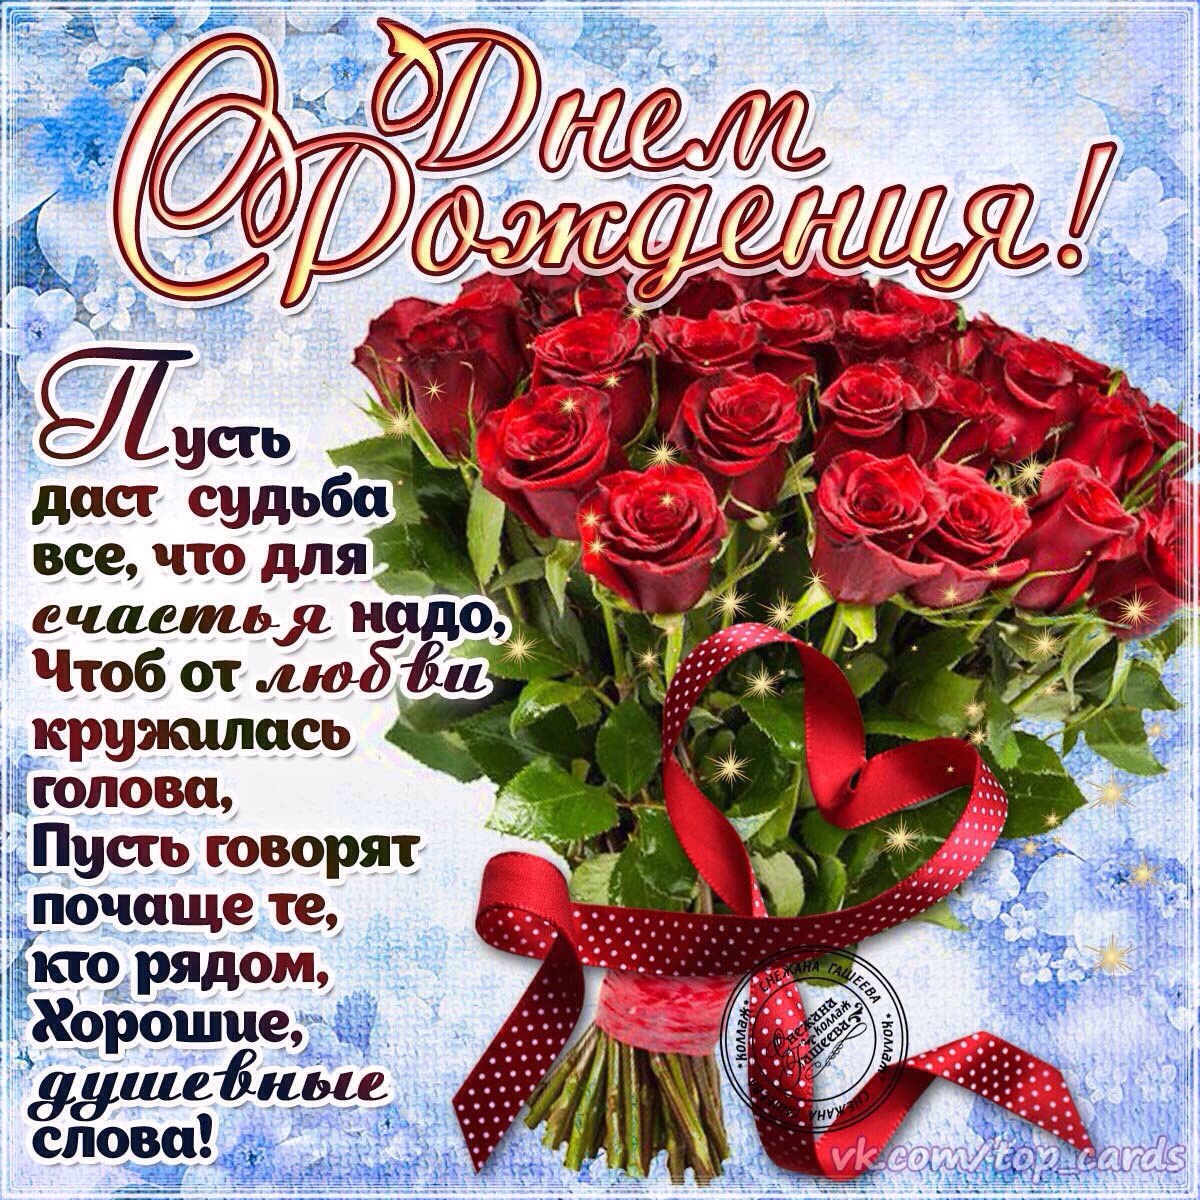 98. Красивые поздравления с днем рождения с букетом шикарных красных роз и необычными стихами!